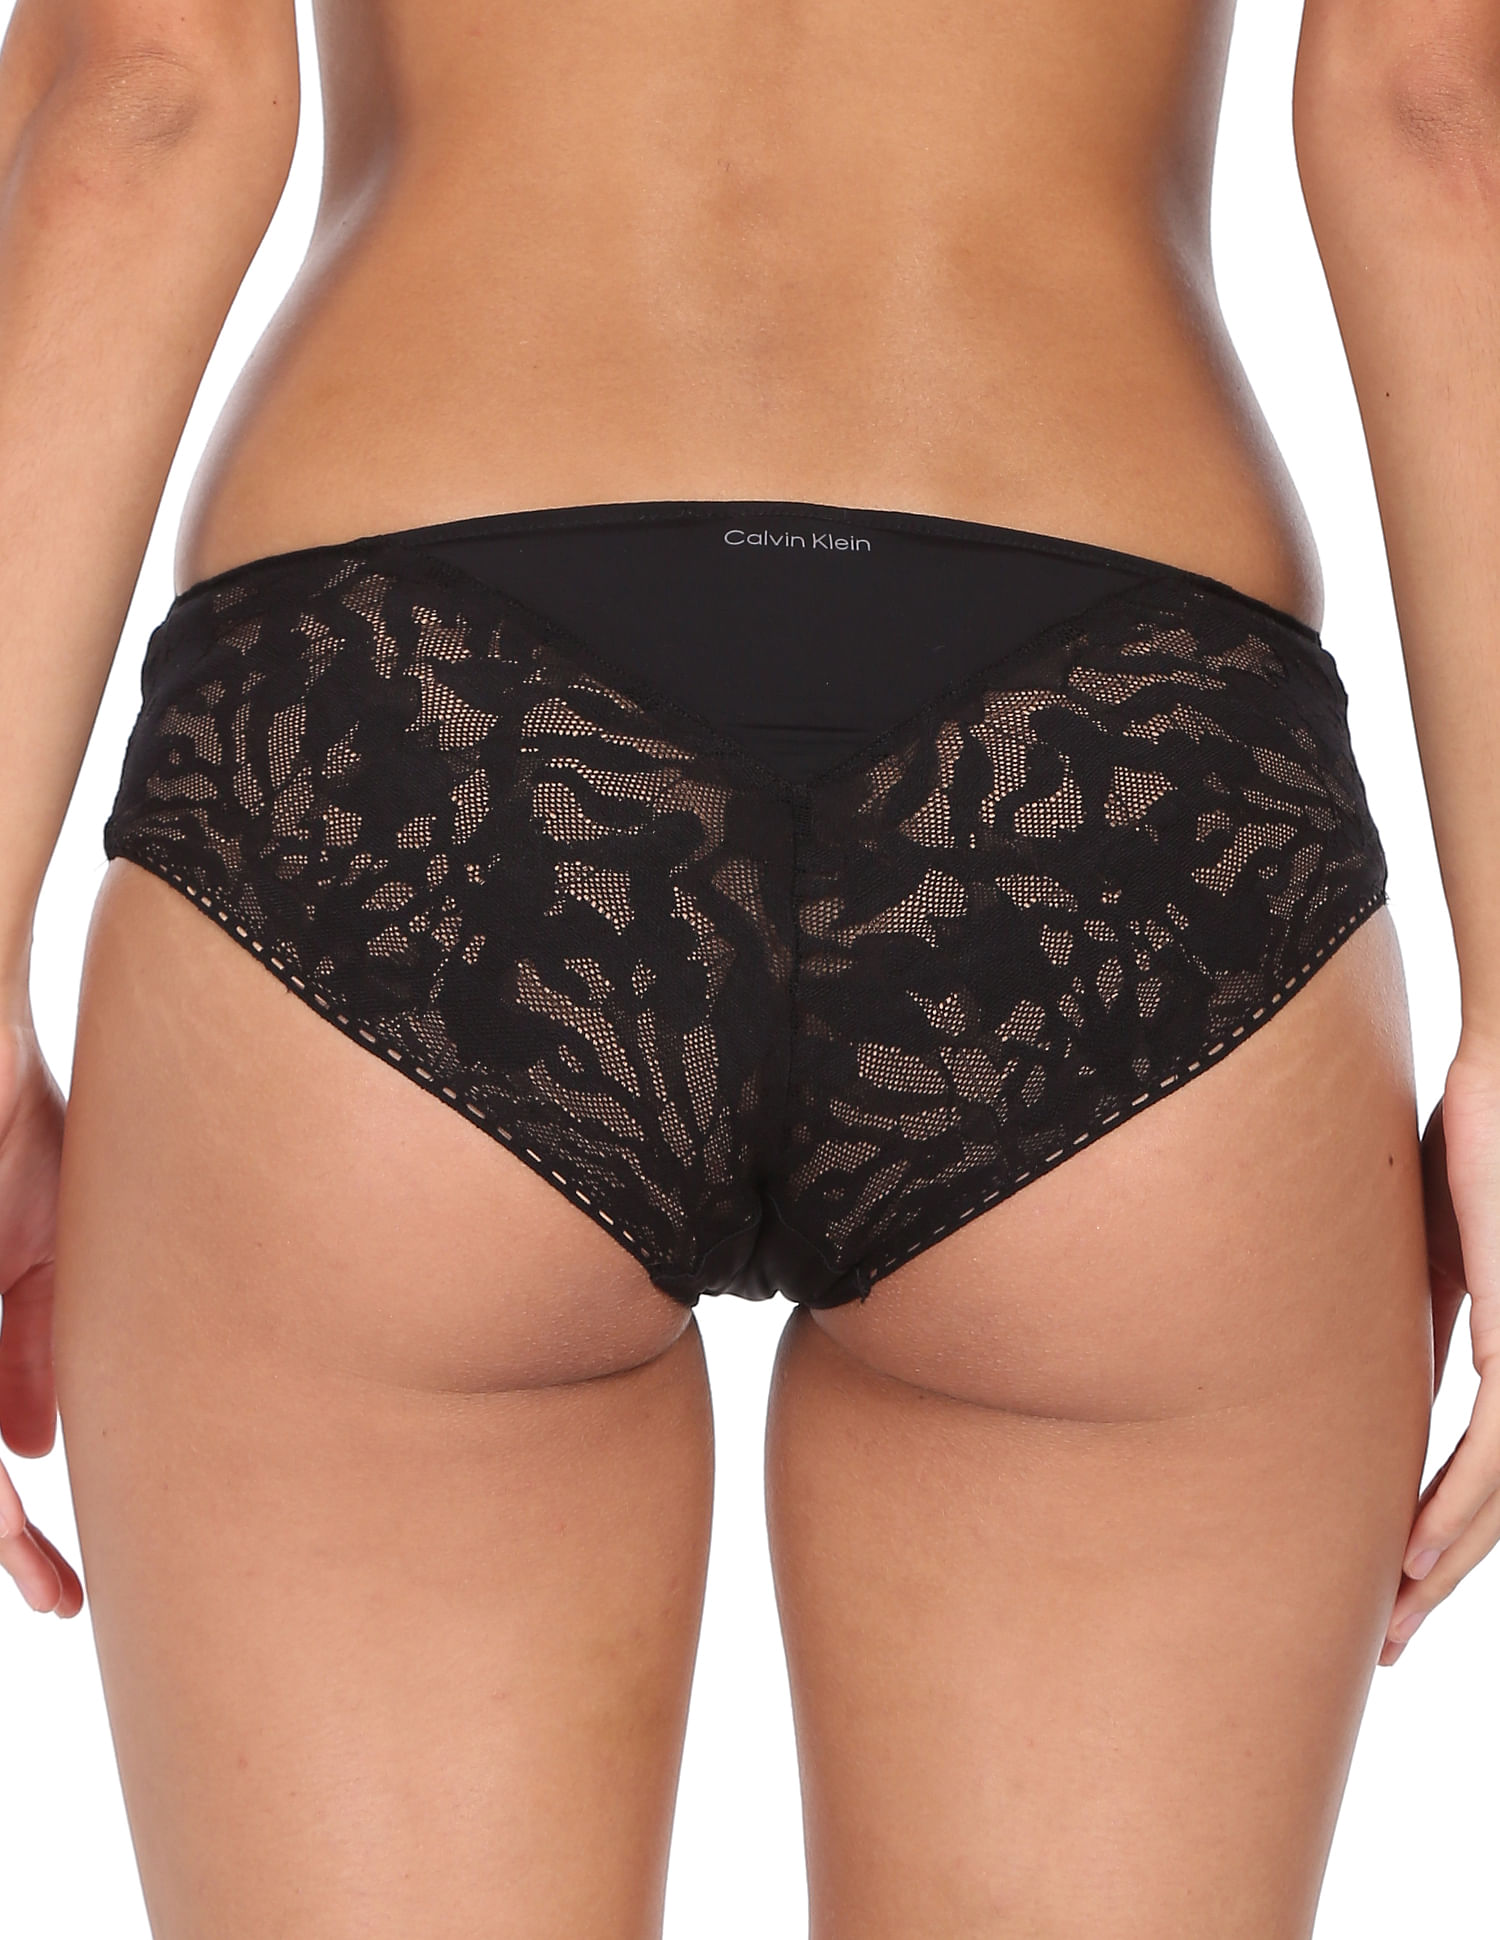 Buy Calvin Klein Underwear Women Black Lace Detail Hipster - NNNOW.com